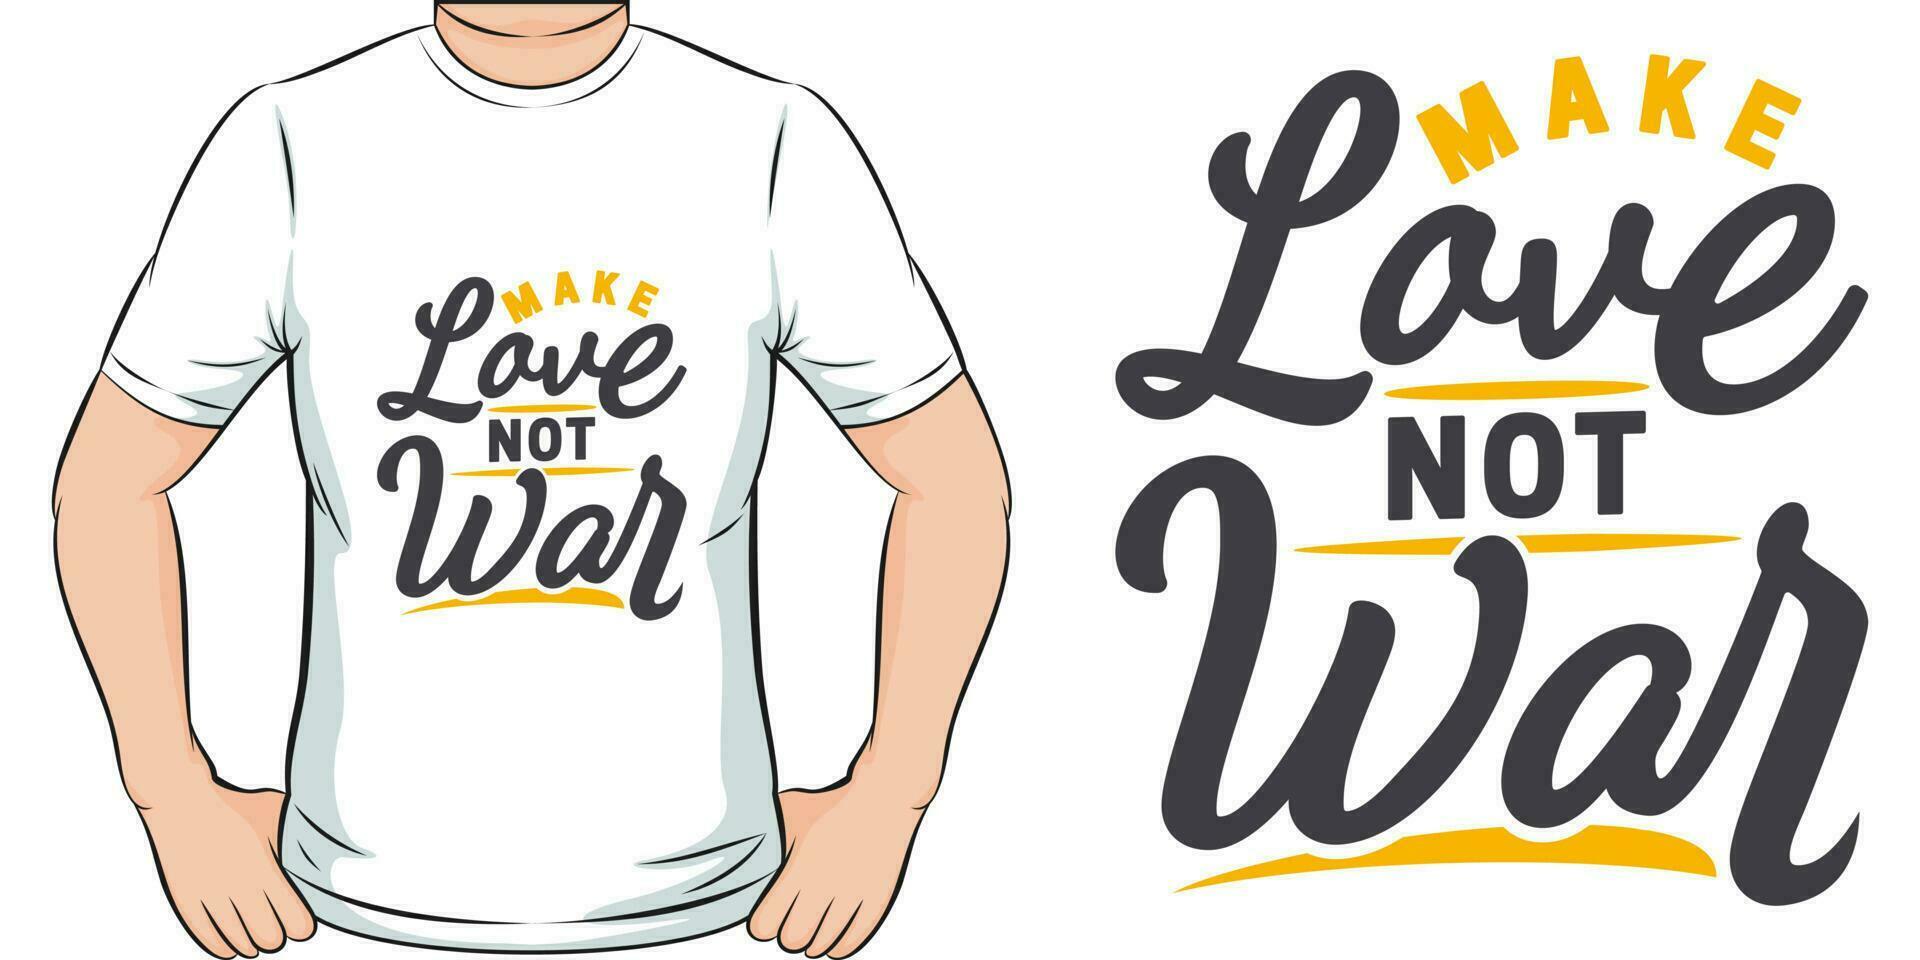 göra kärlek inte krig, motiverande Citat t-shirt design. vektor